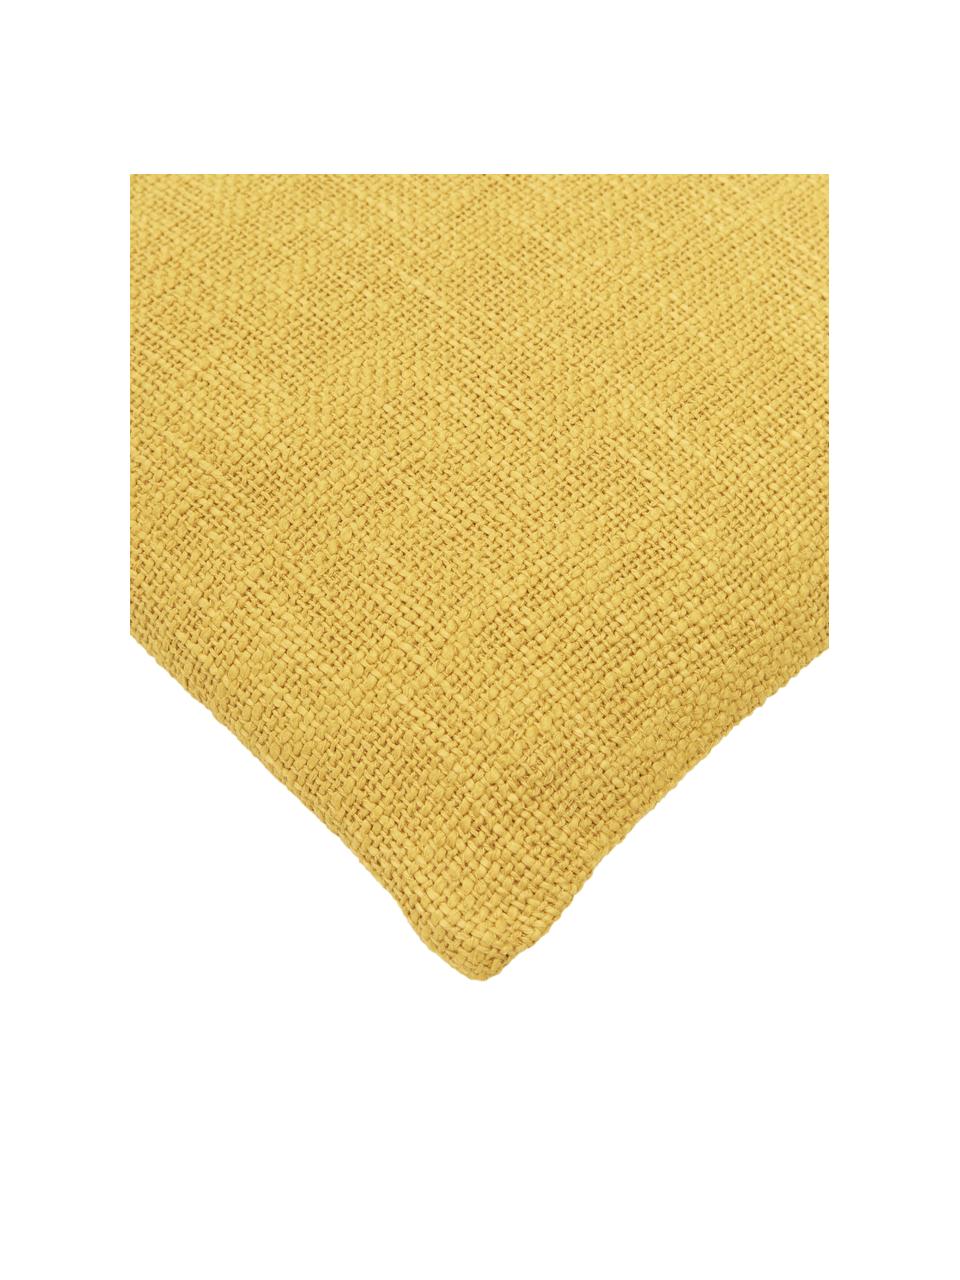 Poszewka na poduszkę Anise, 100% bawełna, Żółty, S 45 x D 45 cm